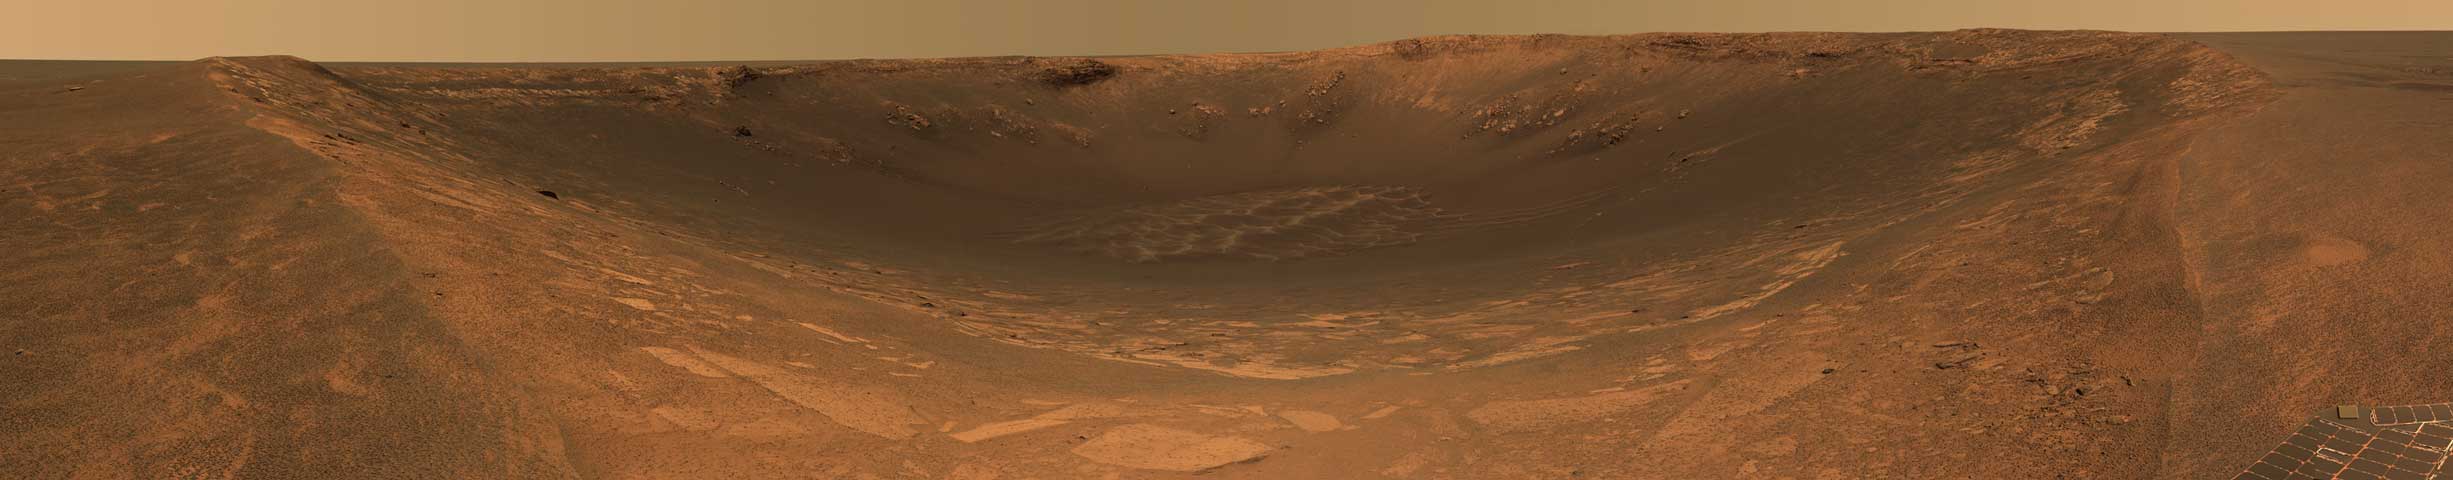 Cratère Endurance sur Mars